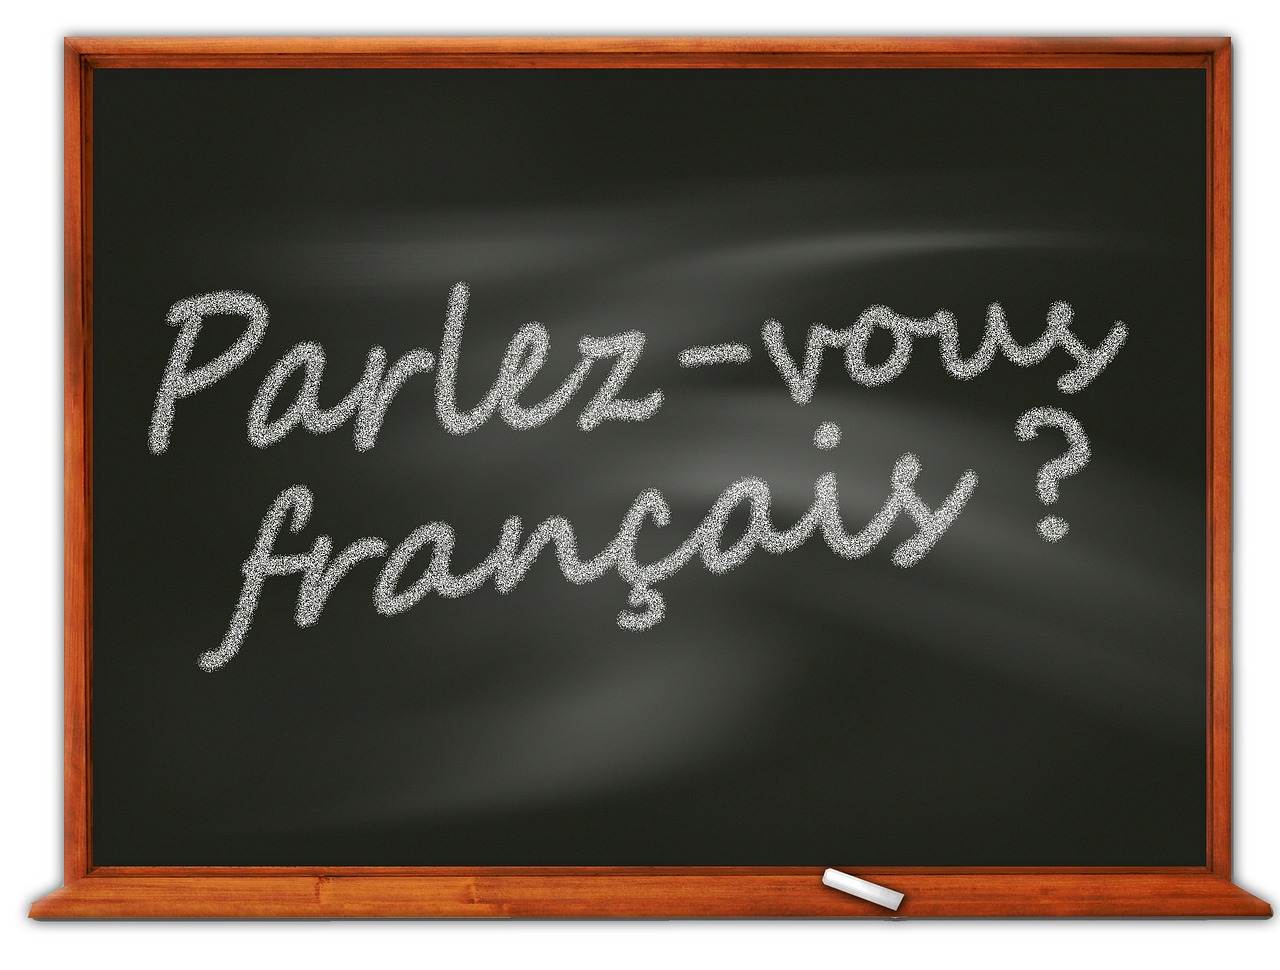 Do you speak French? written on blackboard